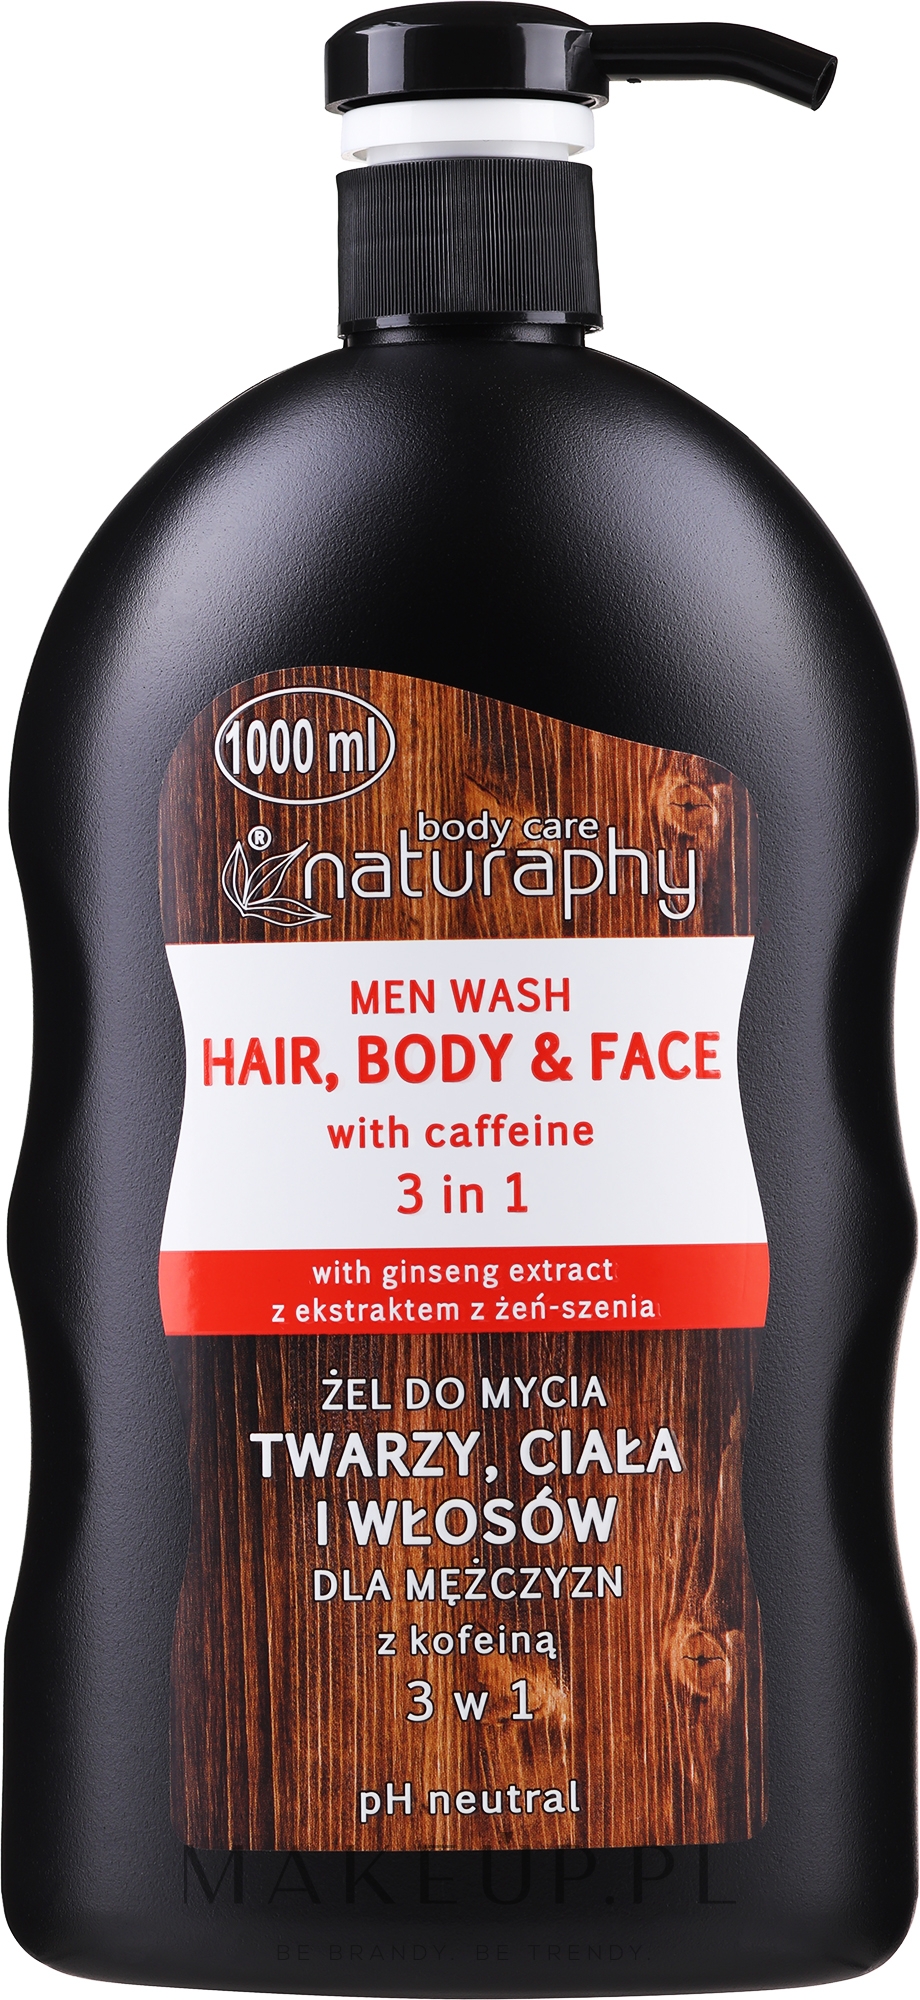 Żel do mycia twarzy, ciała i włosów dla mężczyzn - Naturaphy Hair, Body & Face Man Wash With Caffeine 3 in 1 — Zdjęcie 1000 ml